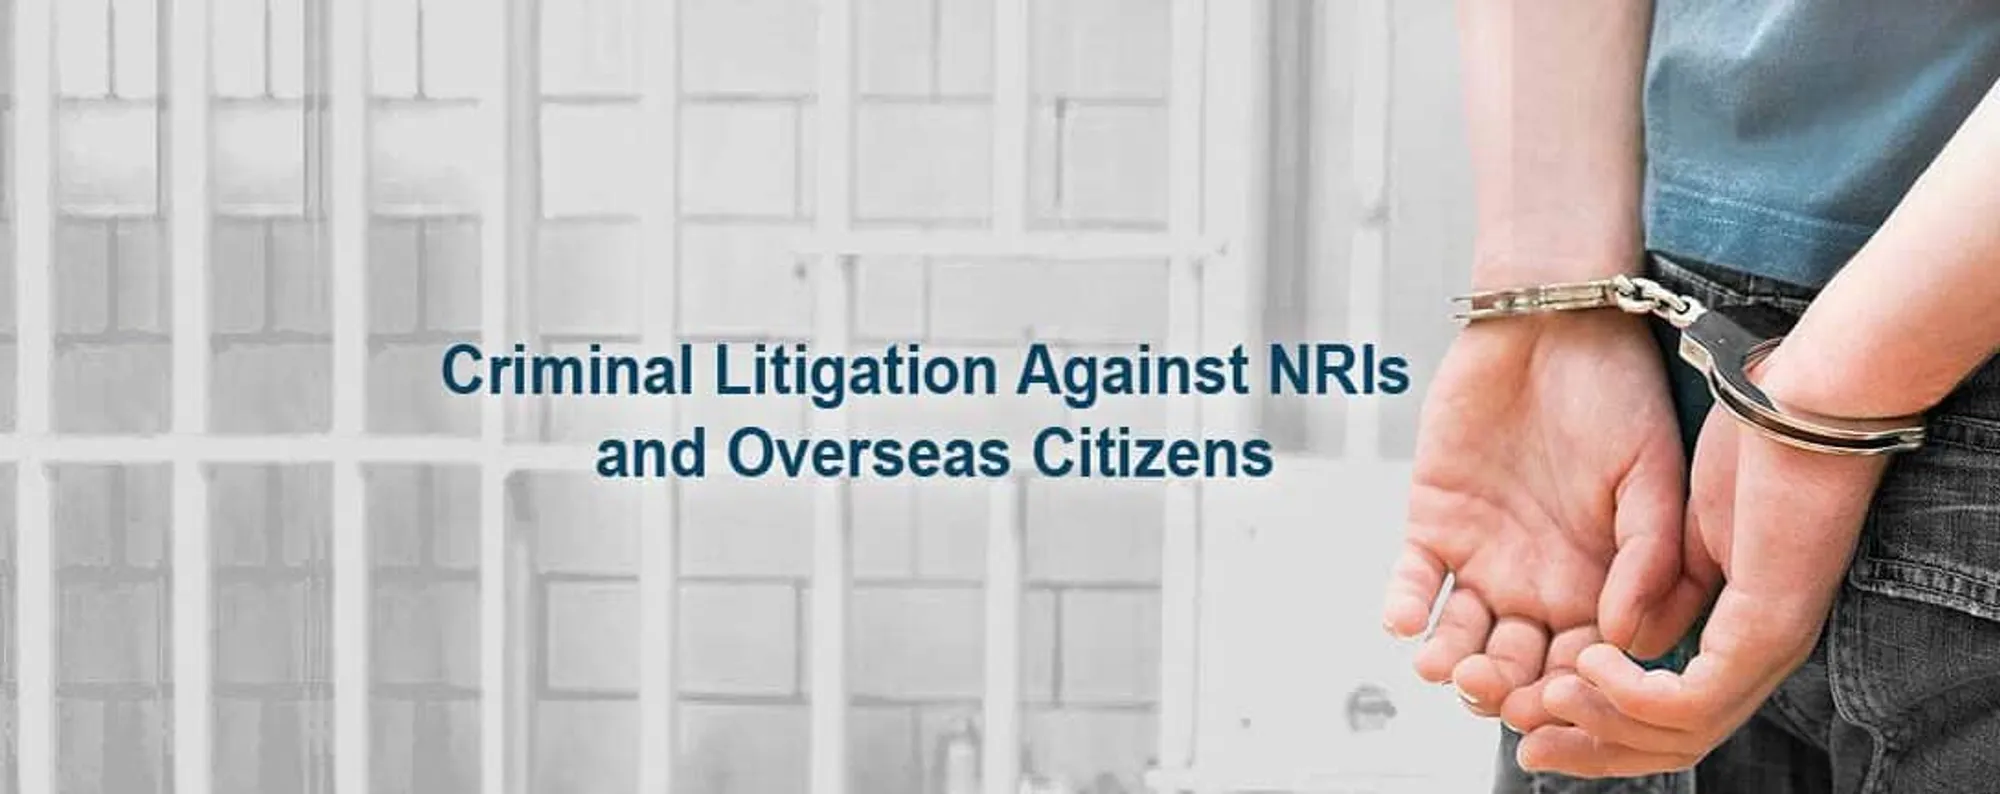 Criminal Litigation Against NRIs-Nri Legal Services